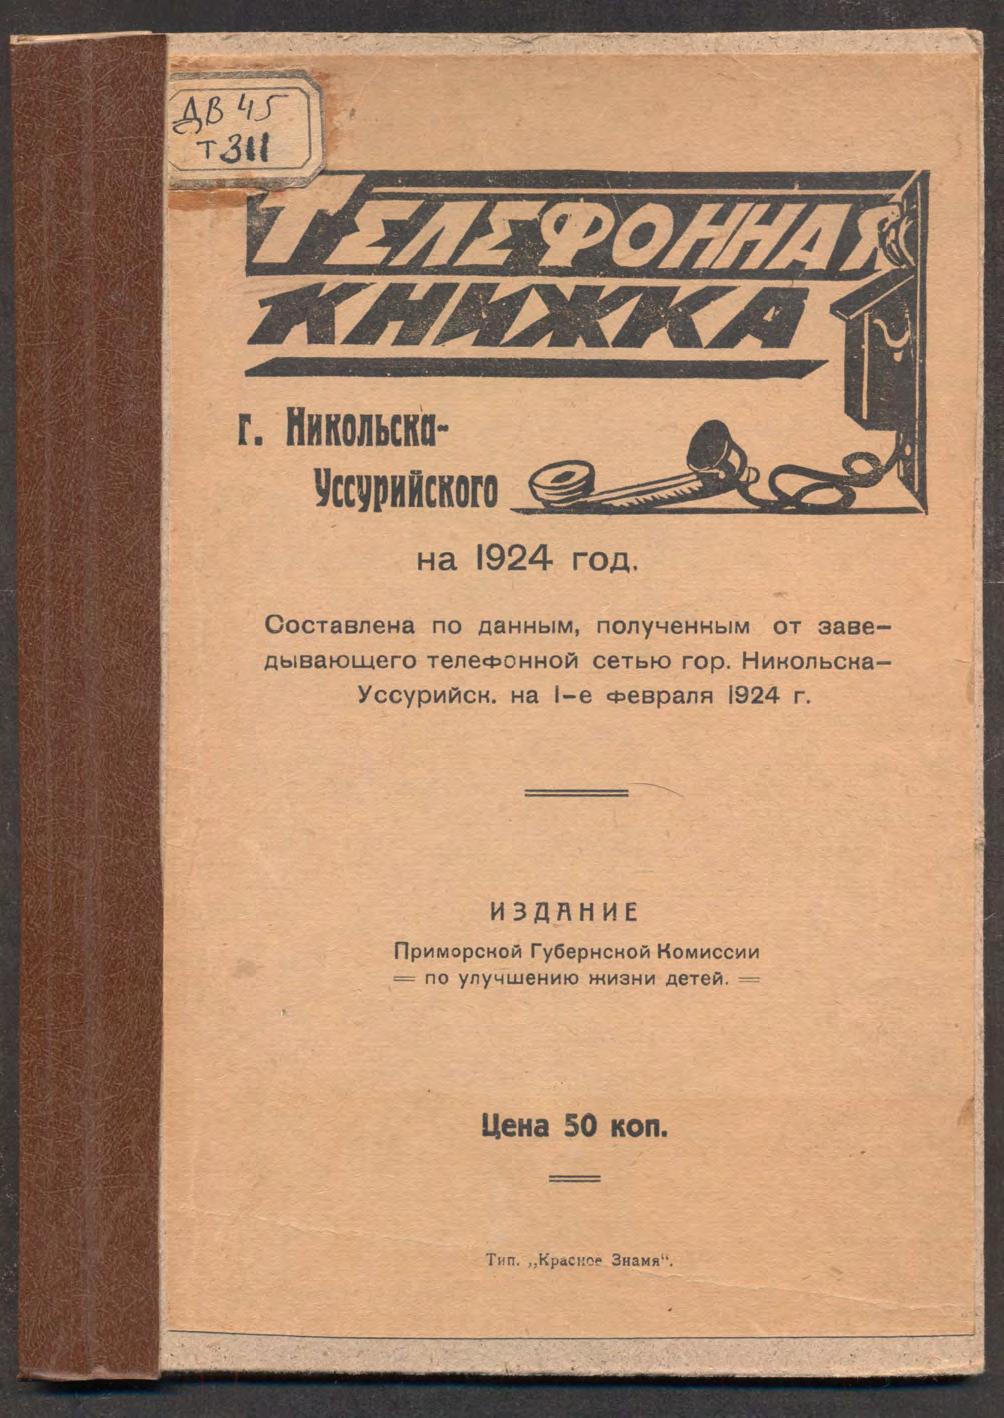 Телефонная книжка г.Никольска-Уссурийского на 1924 год